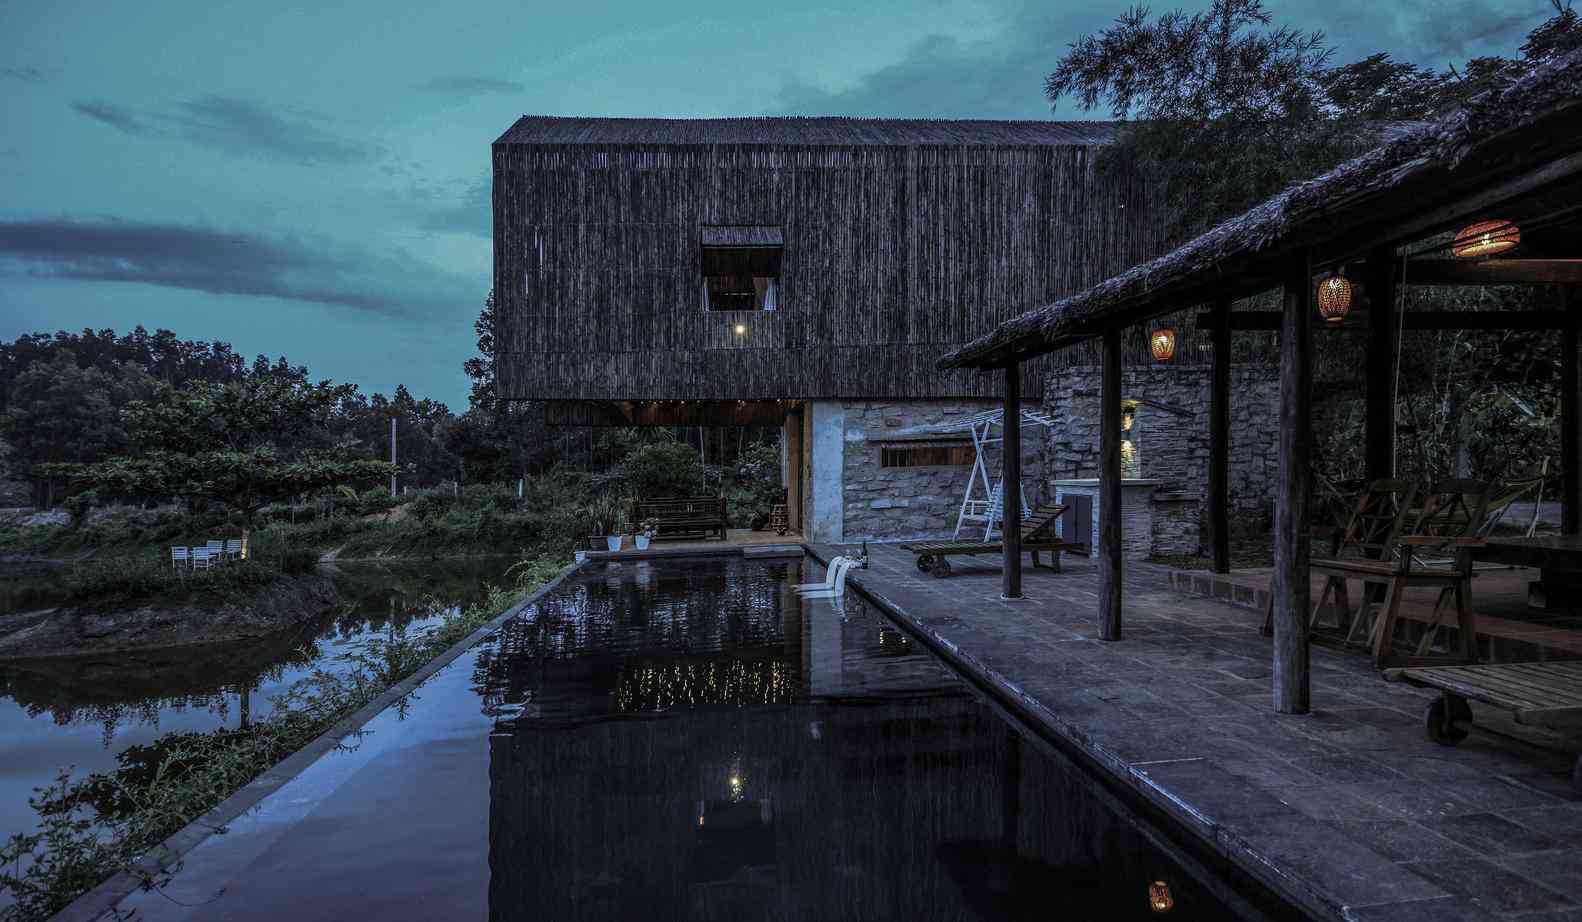 Không có điều hòa, nhà bên hồ ở Đà Nẵng vẫn mát mẻ nhờ lớp vỏ bằng tre - 19 - kythuatcanhtac.com